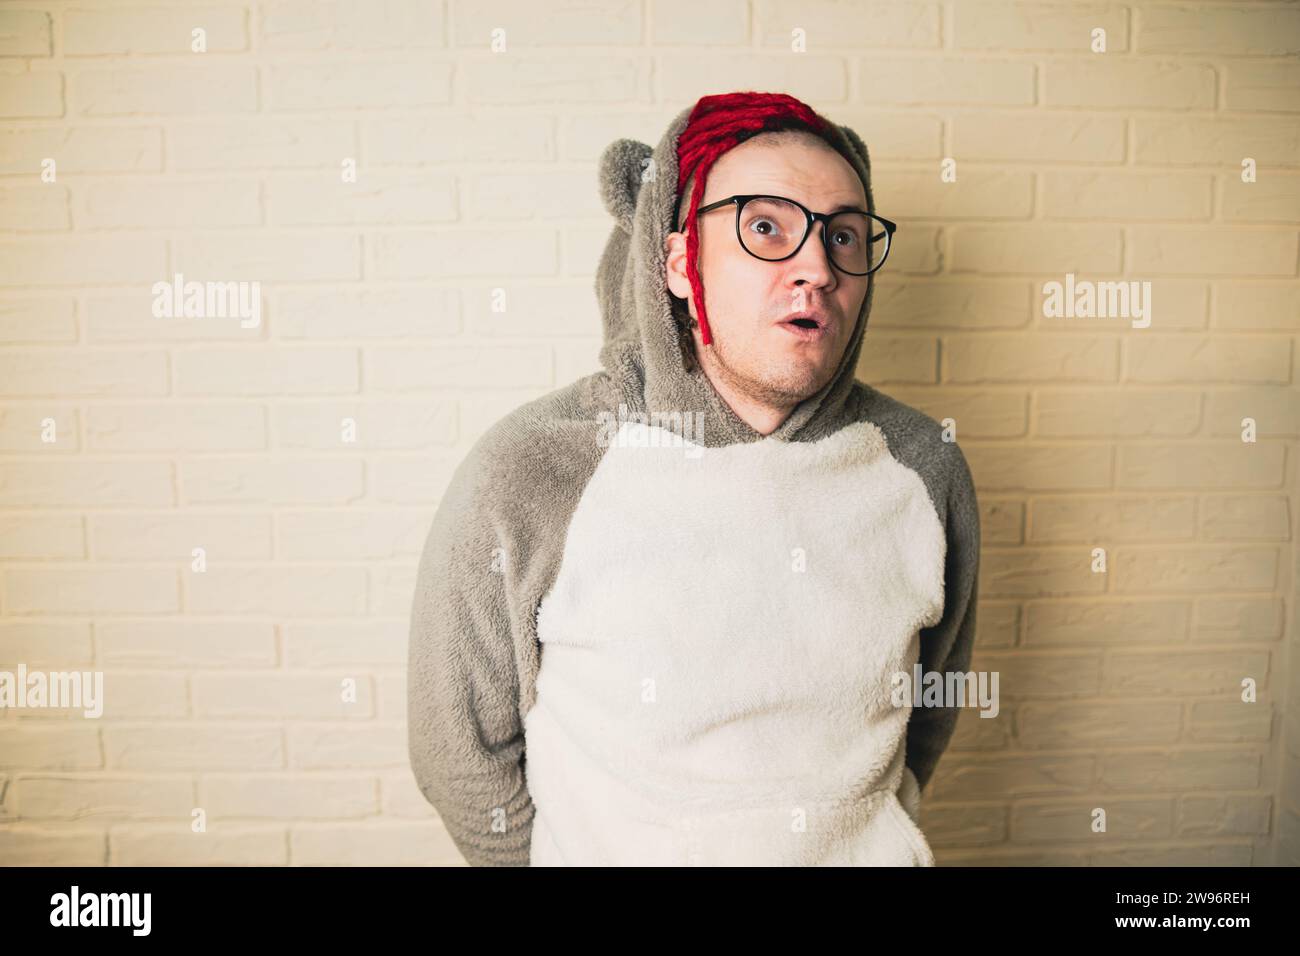 Un bel homme adulte avec des lunettes et des dreadlocks rouges regarde avec intérêt la pièce autour de lui sur le fond d'un mur de briques blanches. Banque D'Images